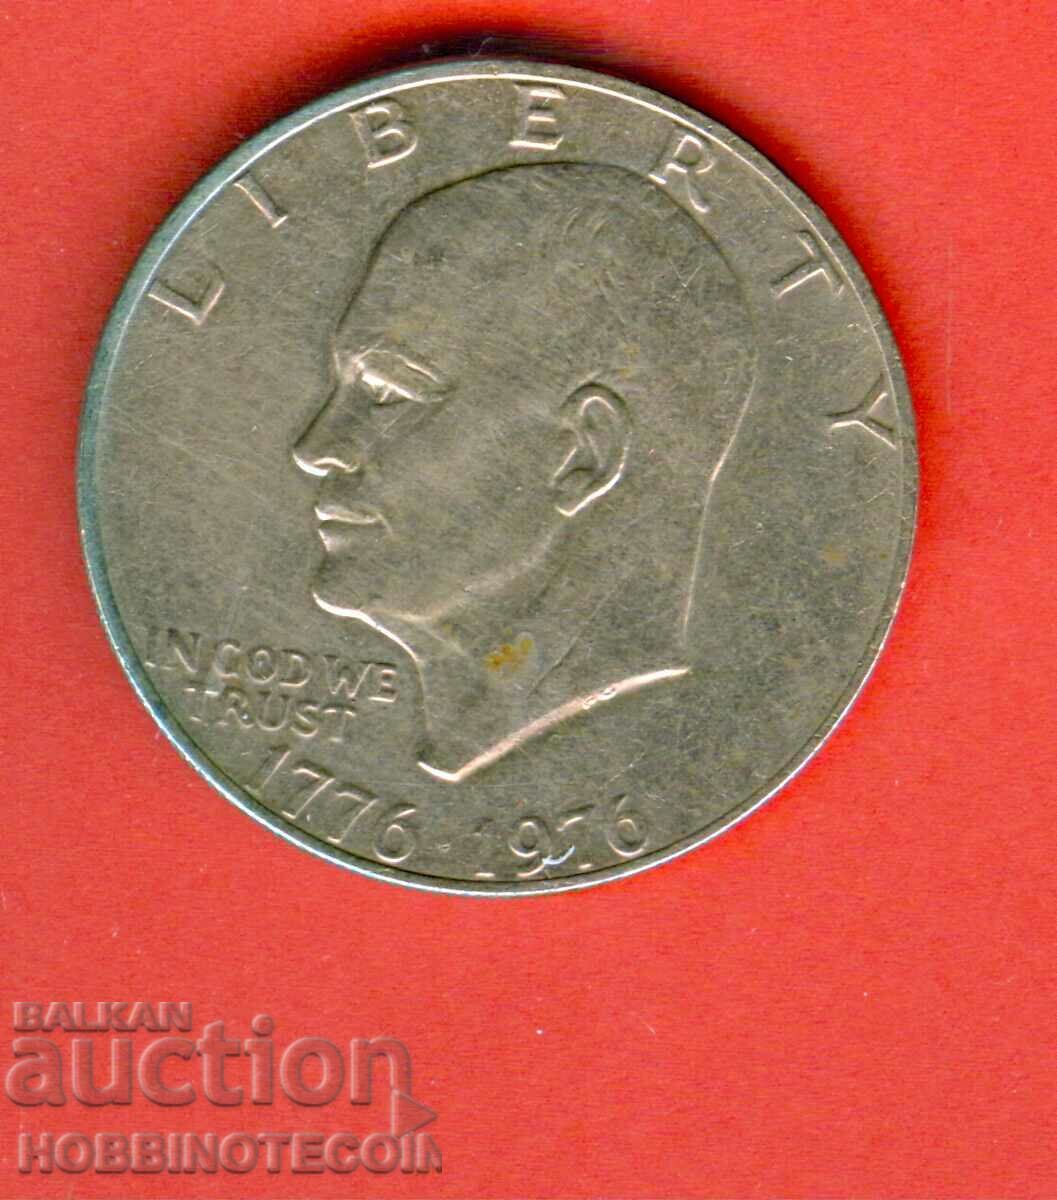 SUA SUA 1,00 USD - 1 USD emisiune 1776 - 1976 - 2